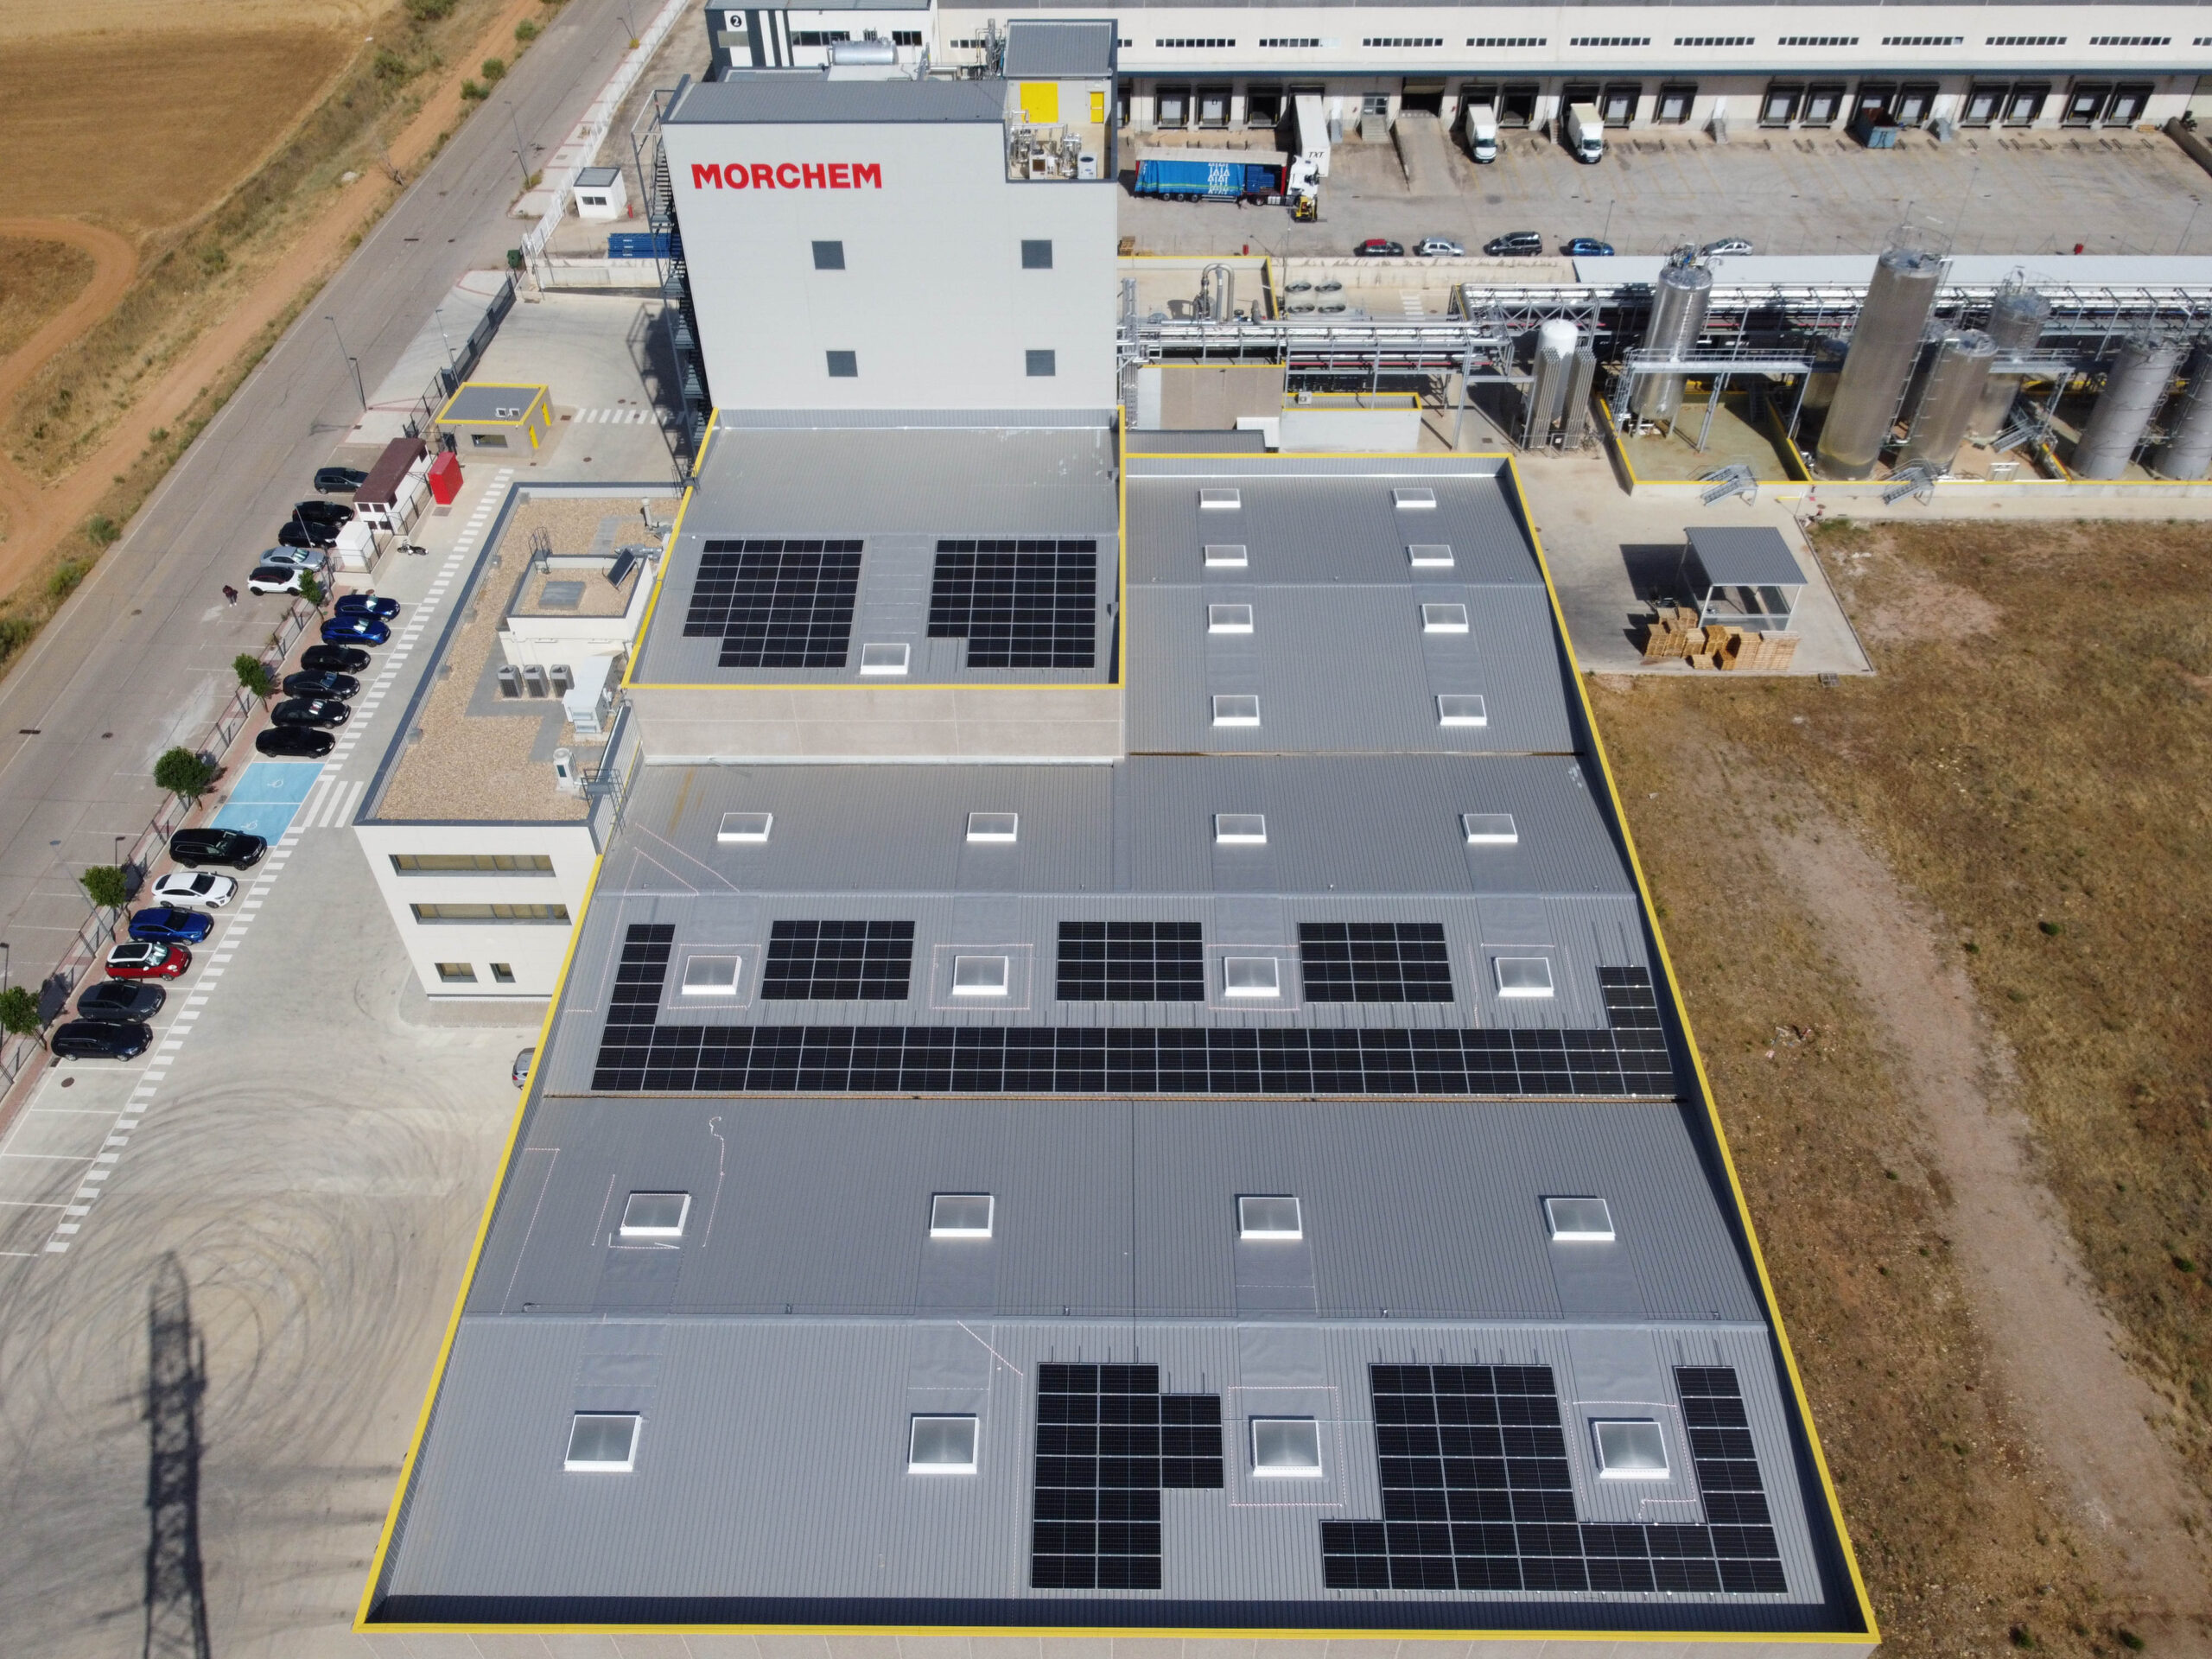 Opengy pone en marcha una instalación de autoconsumo fotovoltaico de 123 kWp para Morchem en Guadalajara